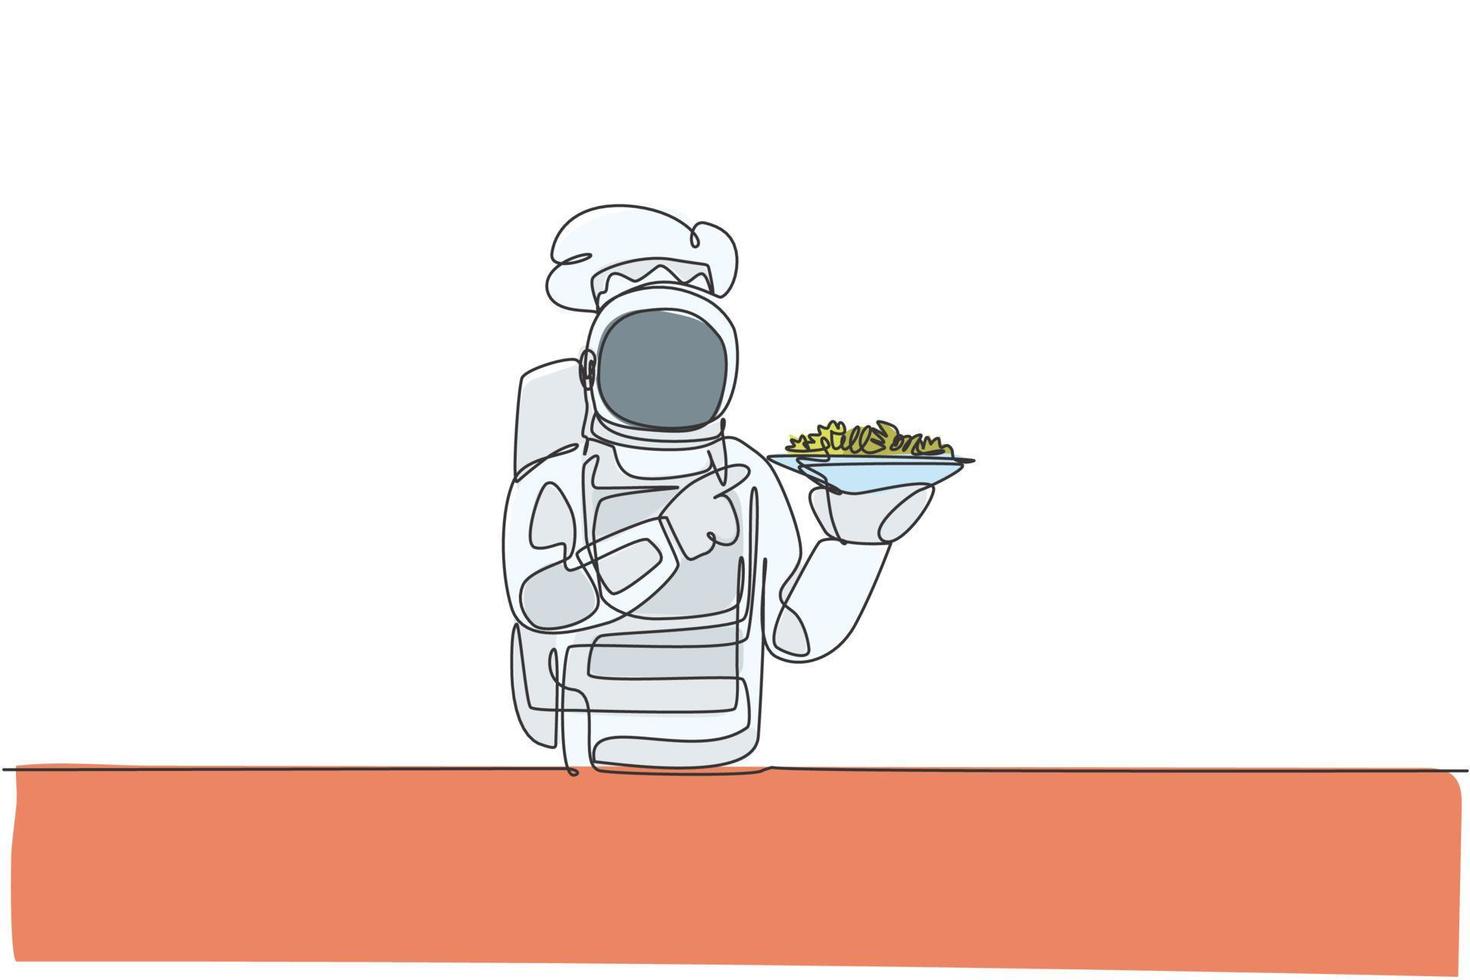 un unico disegno a tratteggio del giovane chef astronauta che serve insalata sana cucina cibo per cafe resto illustrazione grafica vettoriale. delizioso concetto di piatto della galassia spaziale. design moderno a linea continua vettore